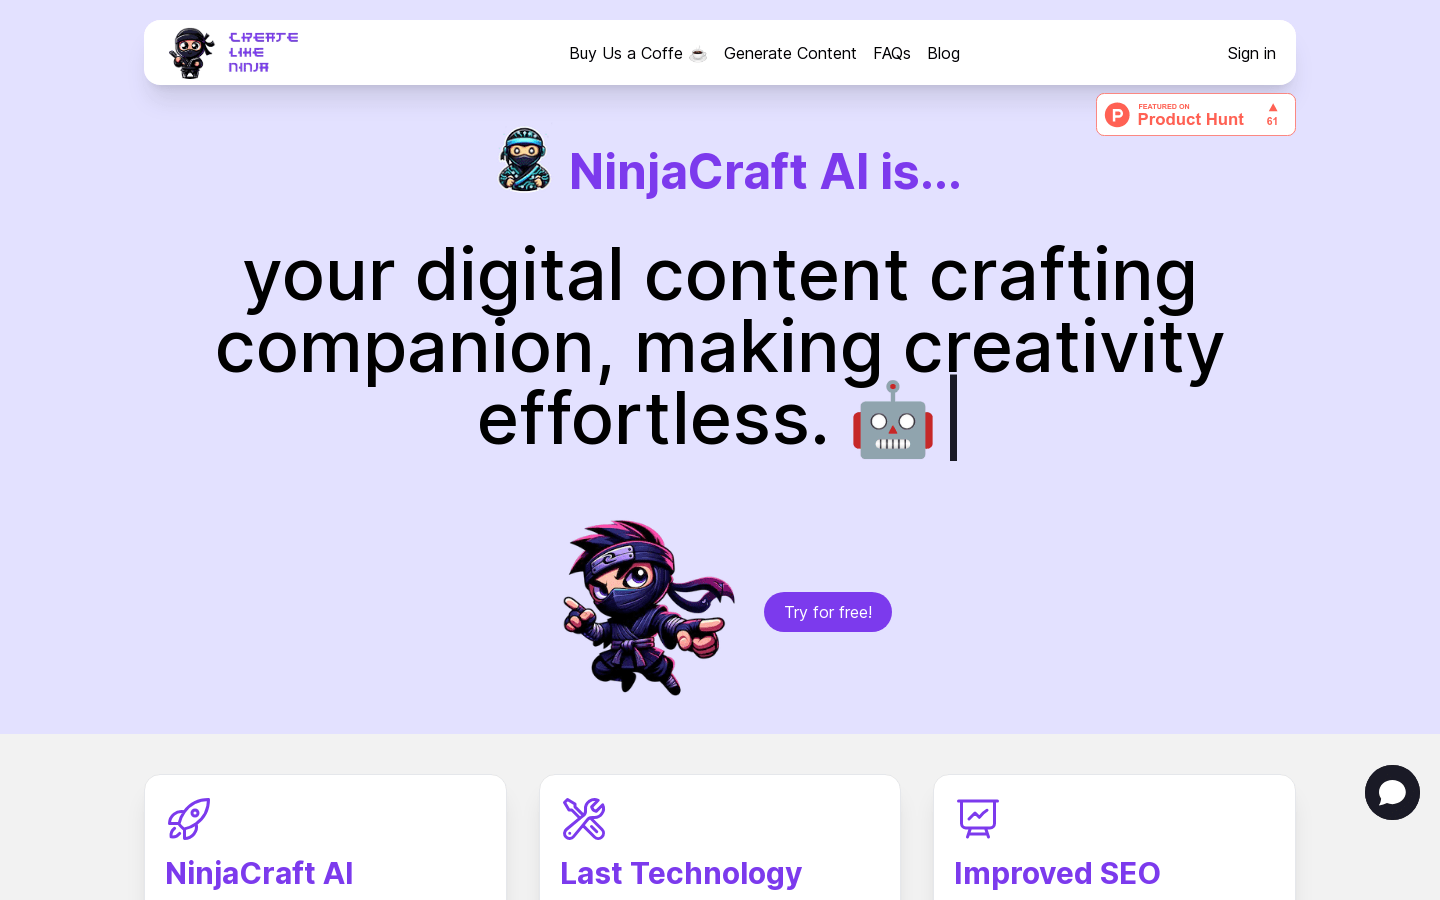 NinjaCraft AI